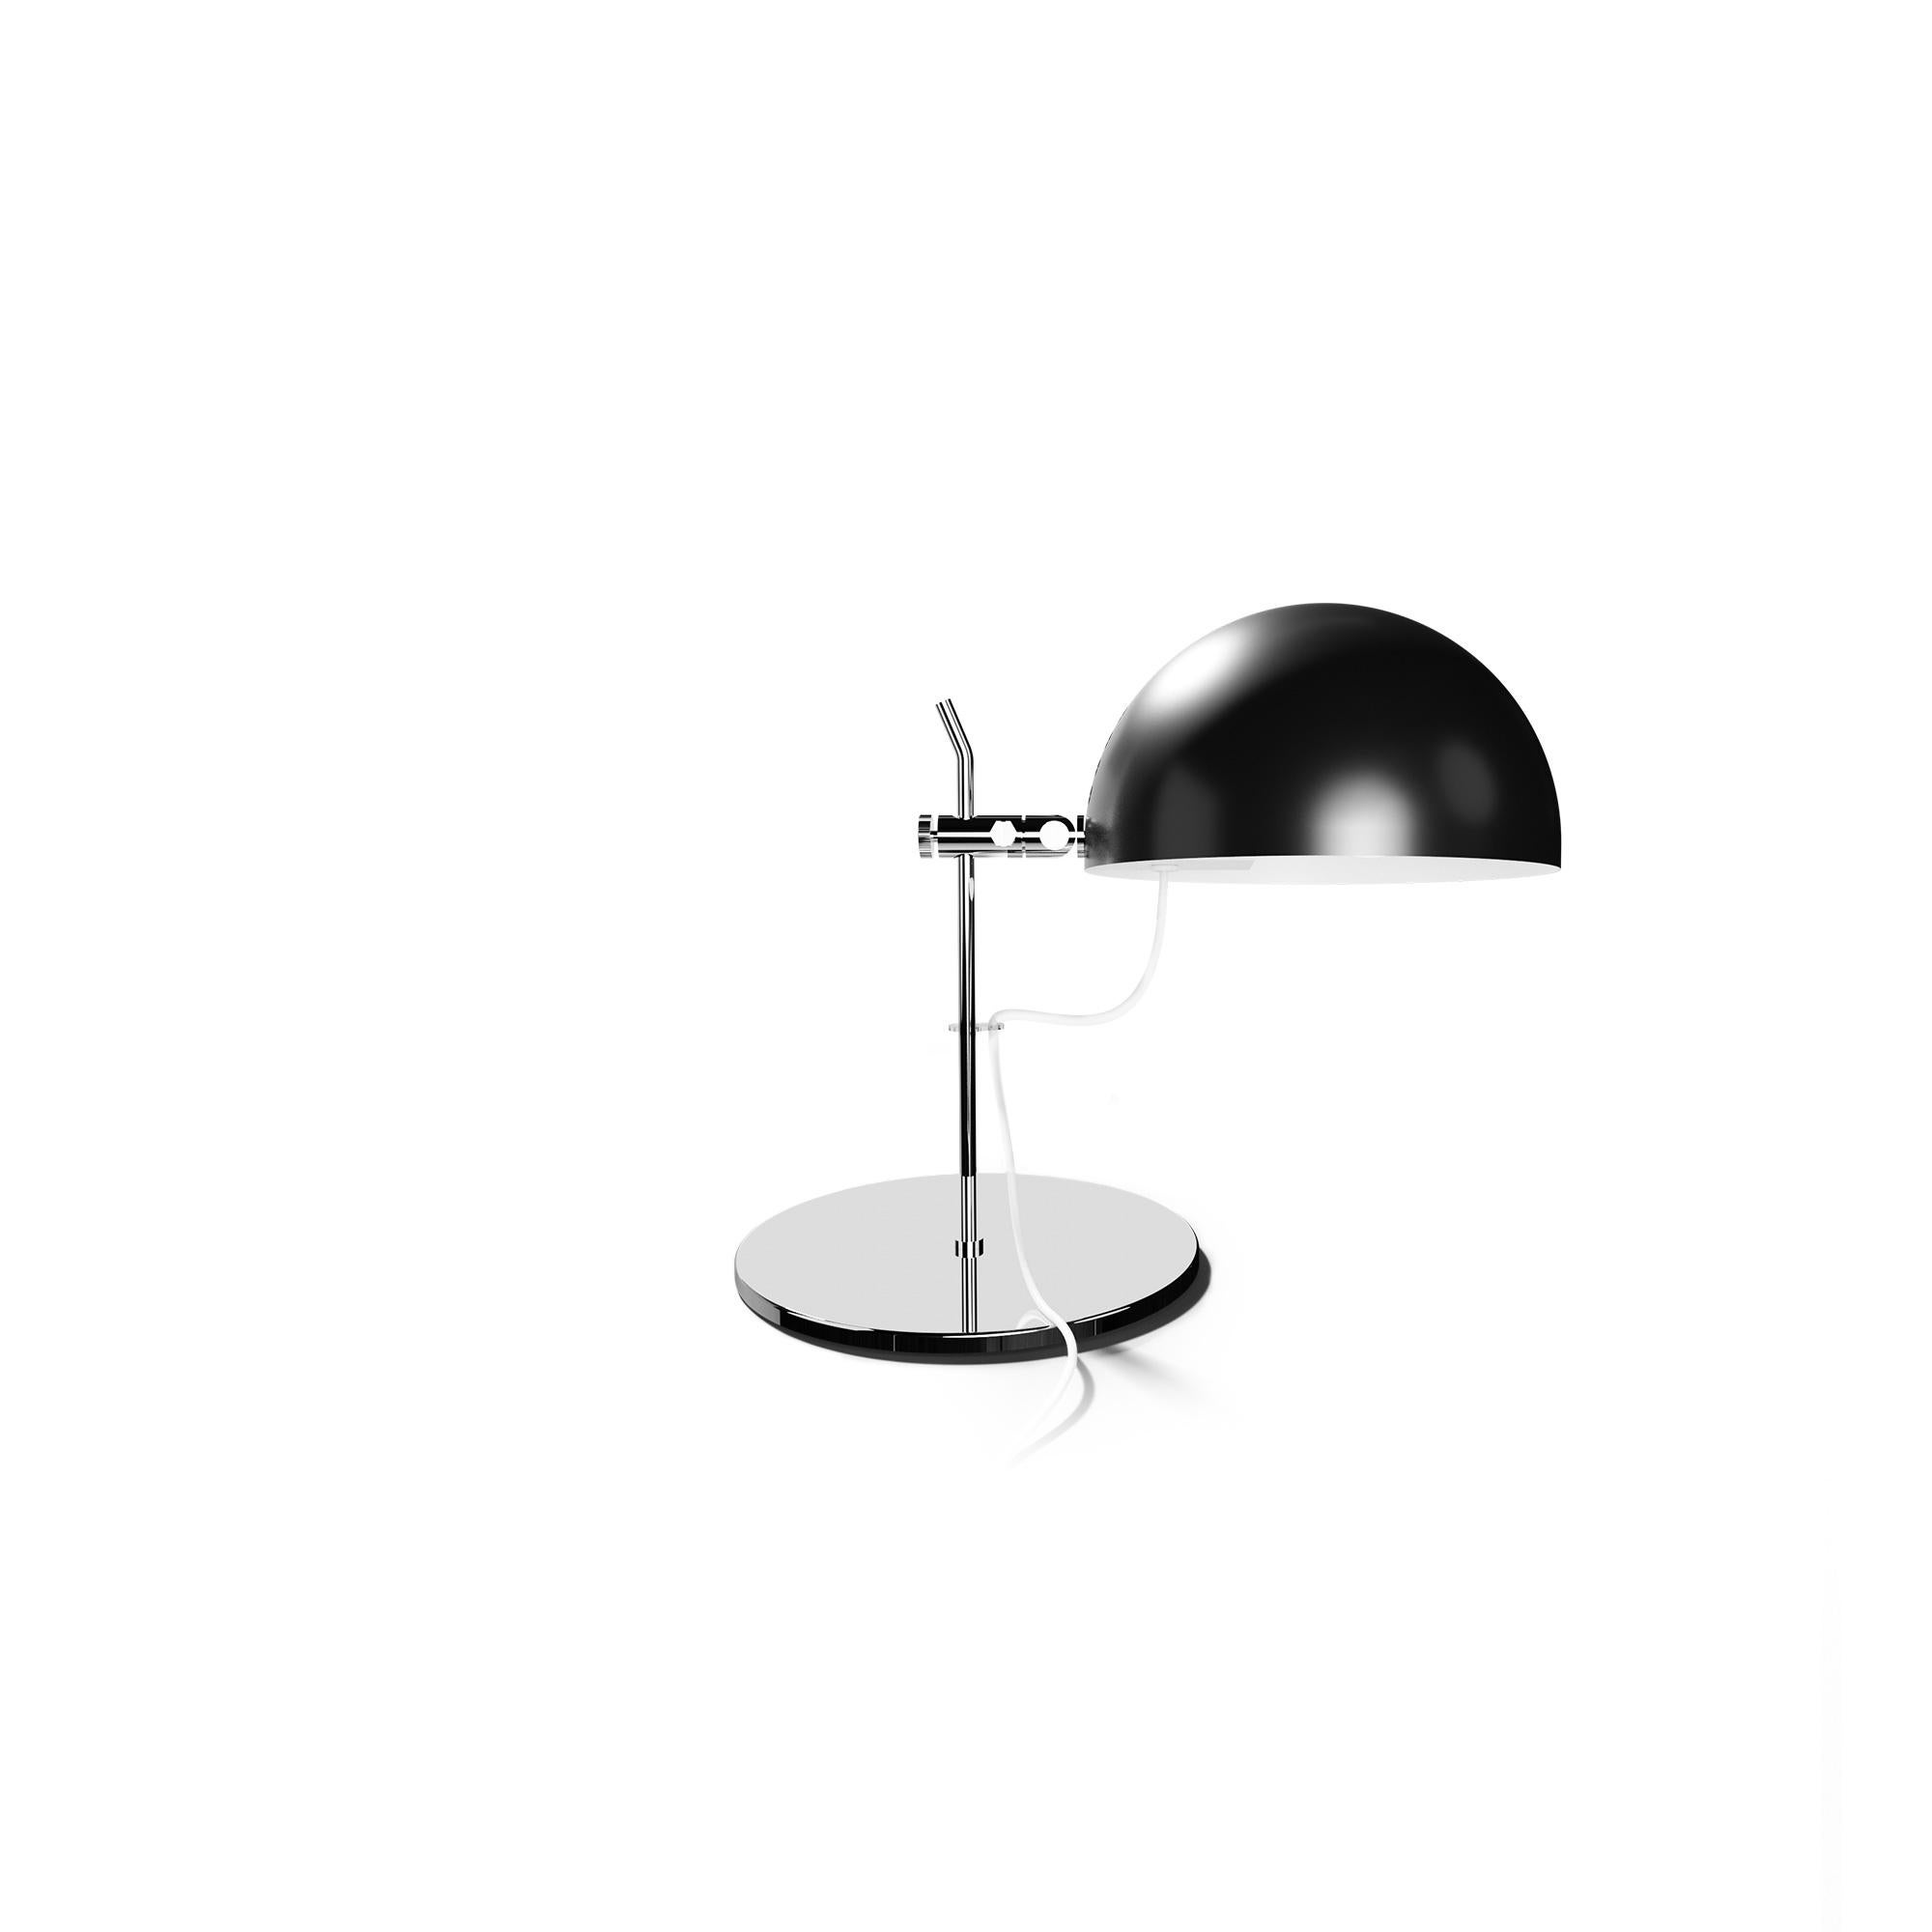 Alain Richard 'A21' Desk Lamp in Orange for Disderot For Sale 6